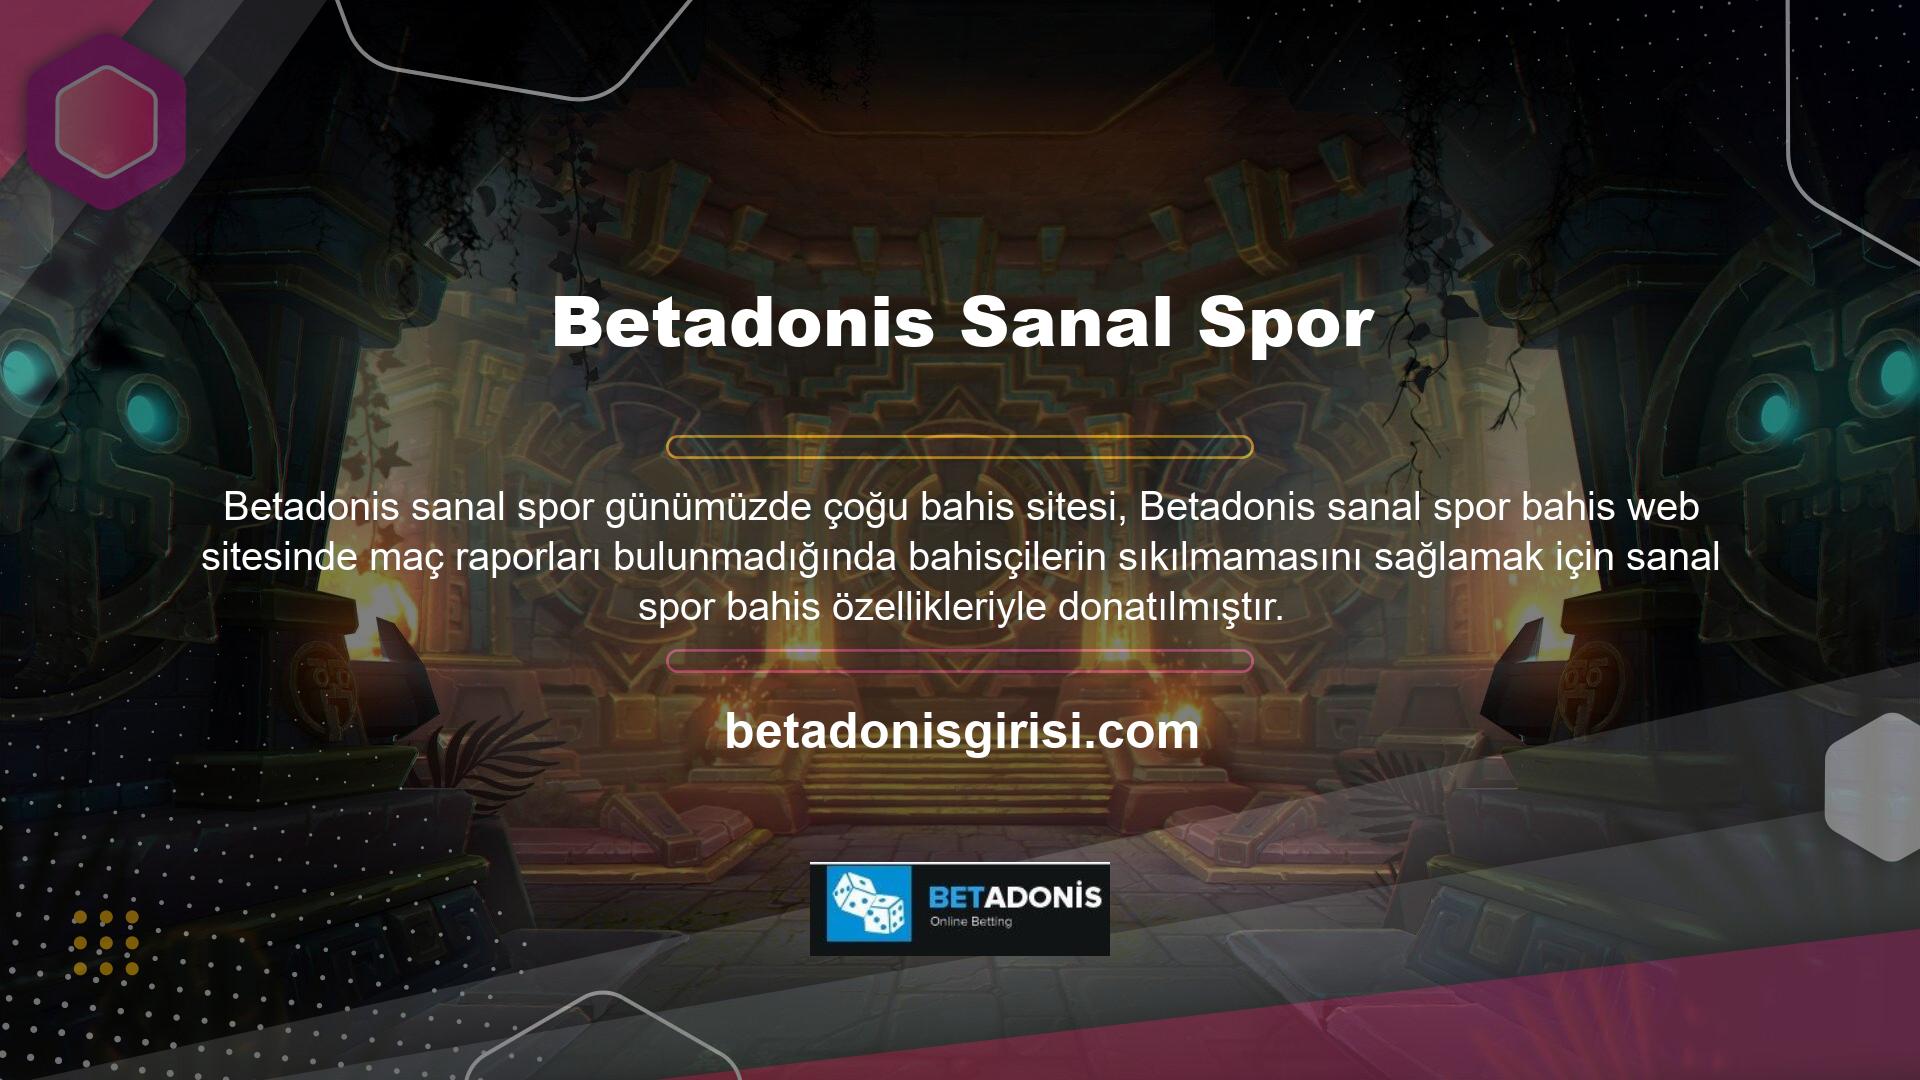 Bahis sitesi Betadonis özellikle sanal futbol, sanal tenis ve sanal basketbol alanlarında kullanıcı hizmetleri sunmaktadır